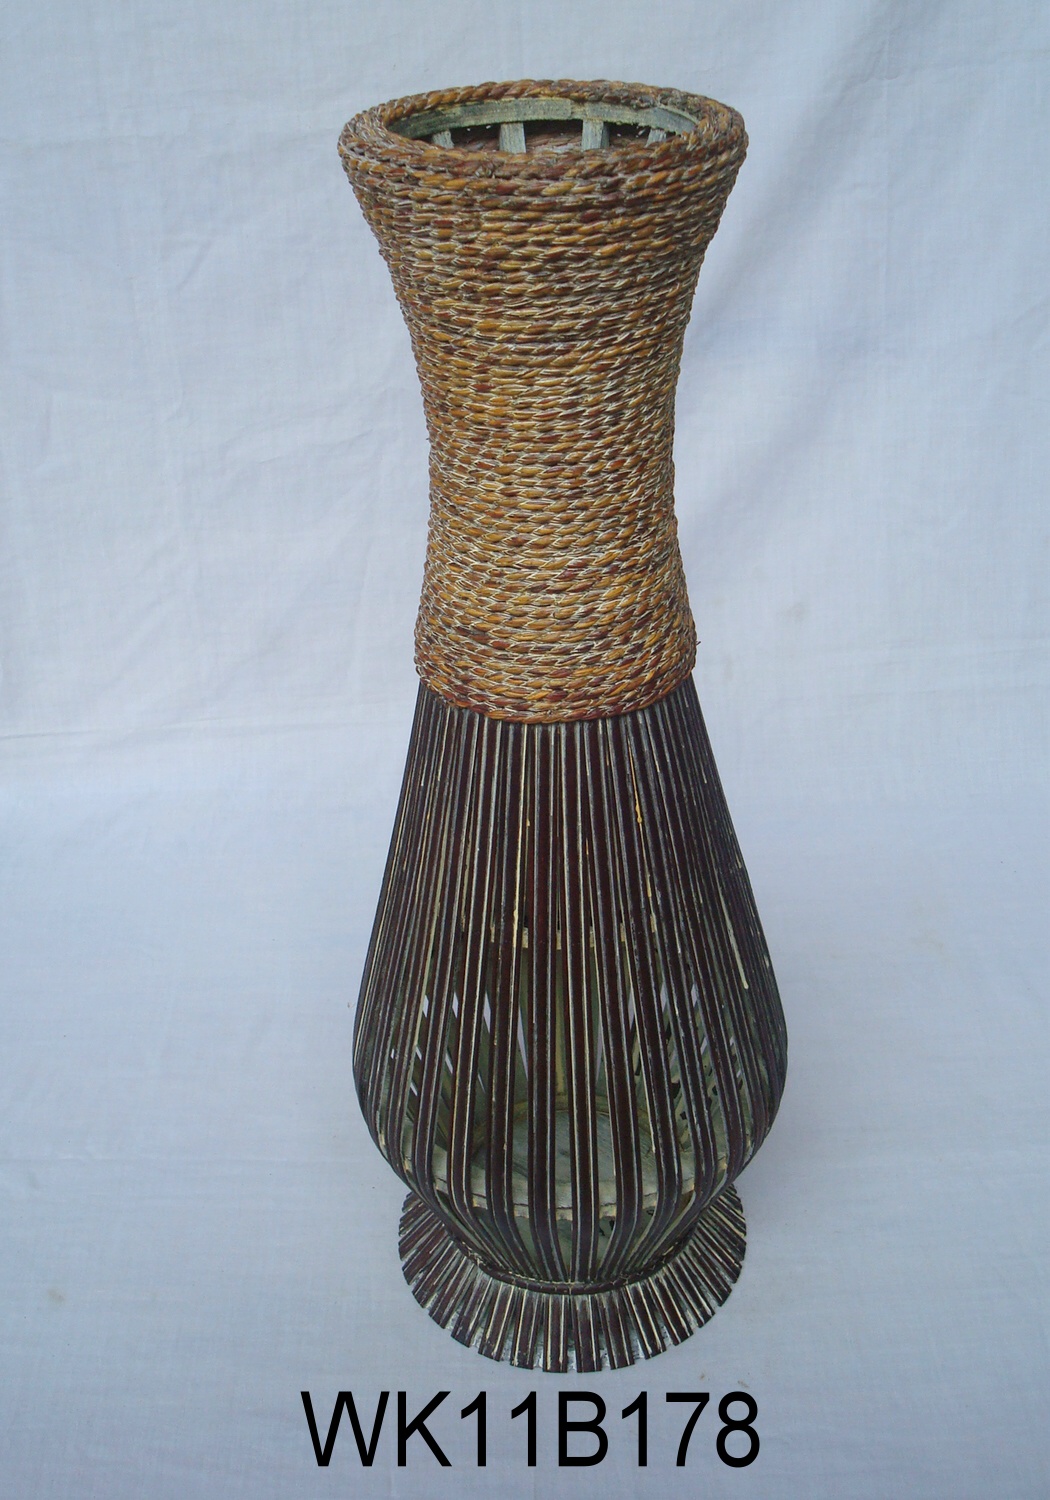 Flower Vase145